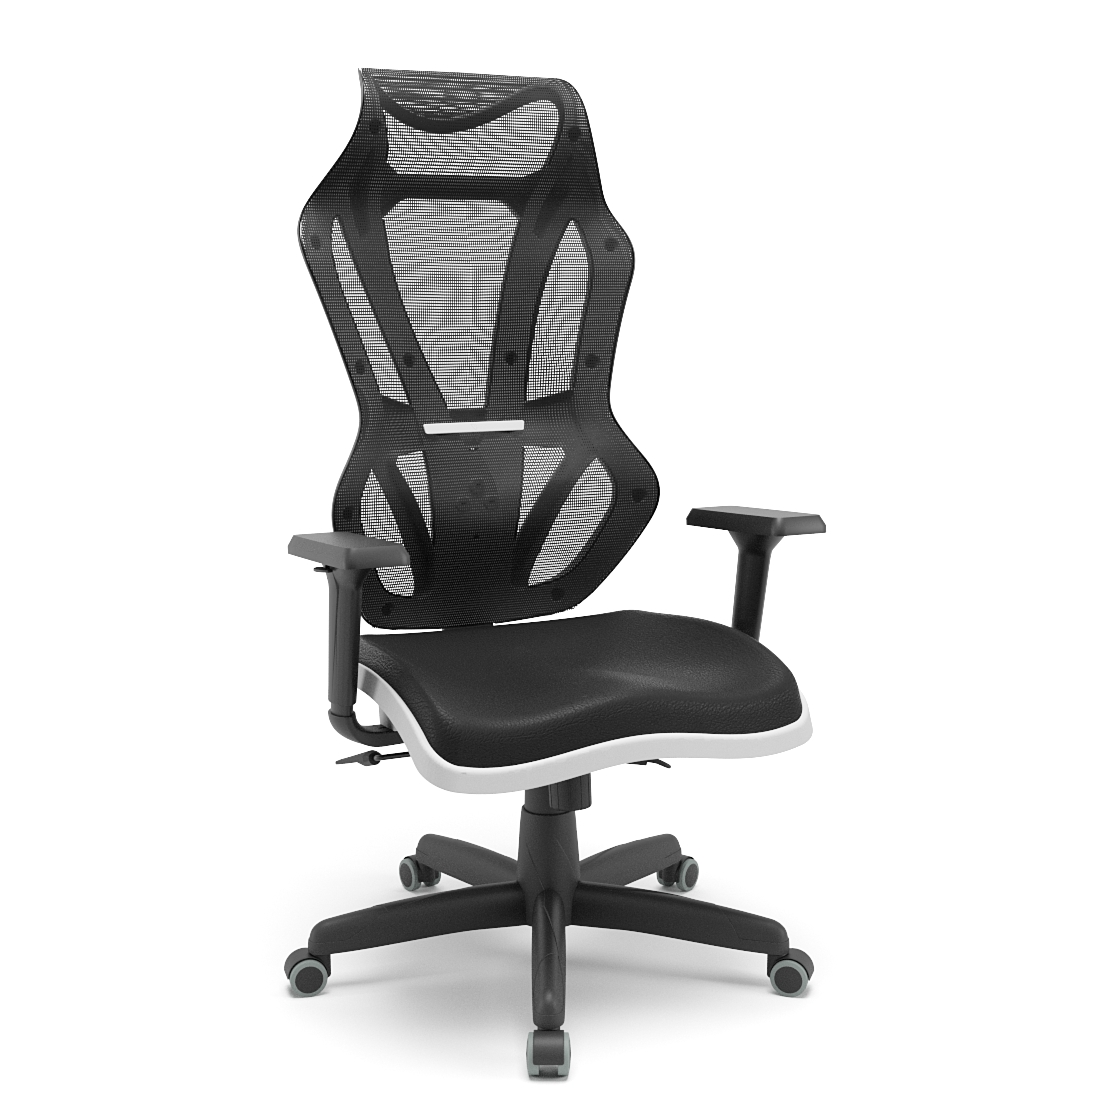 Cadeira Vizon DZ Plaxmetal de Frente Branca | Codistoke